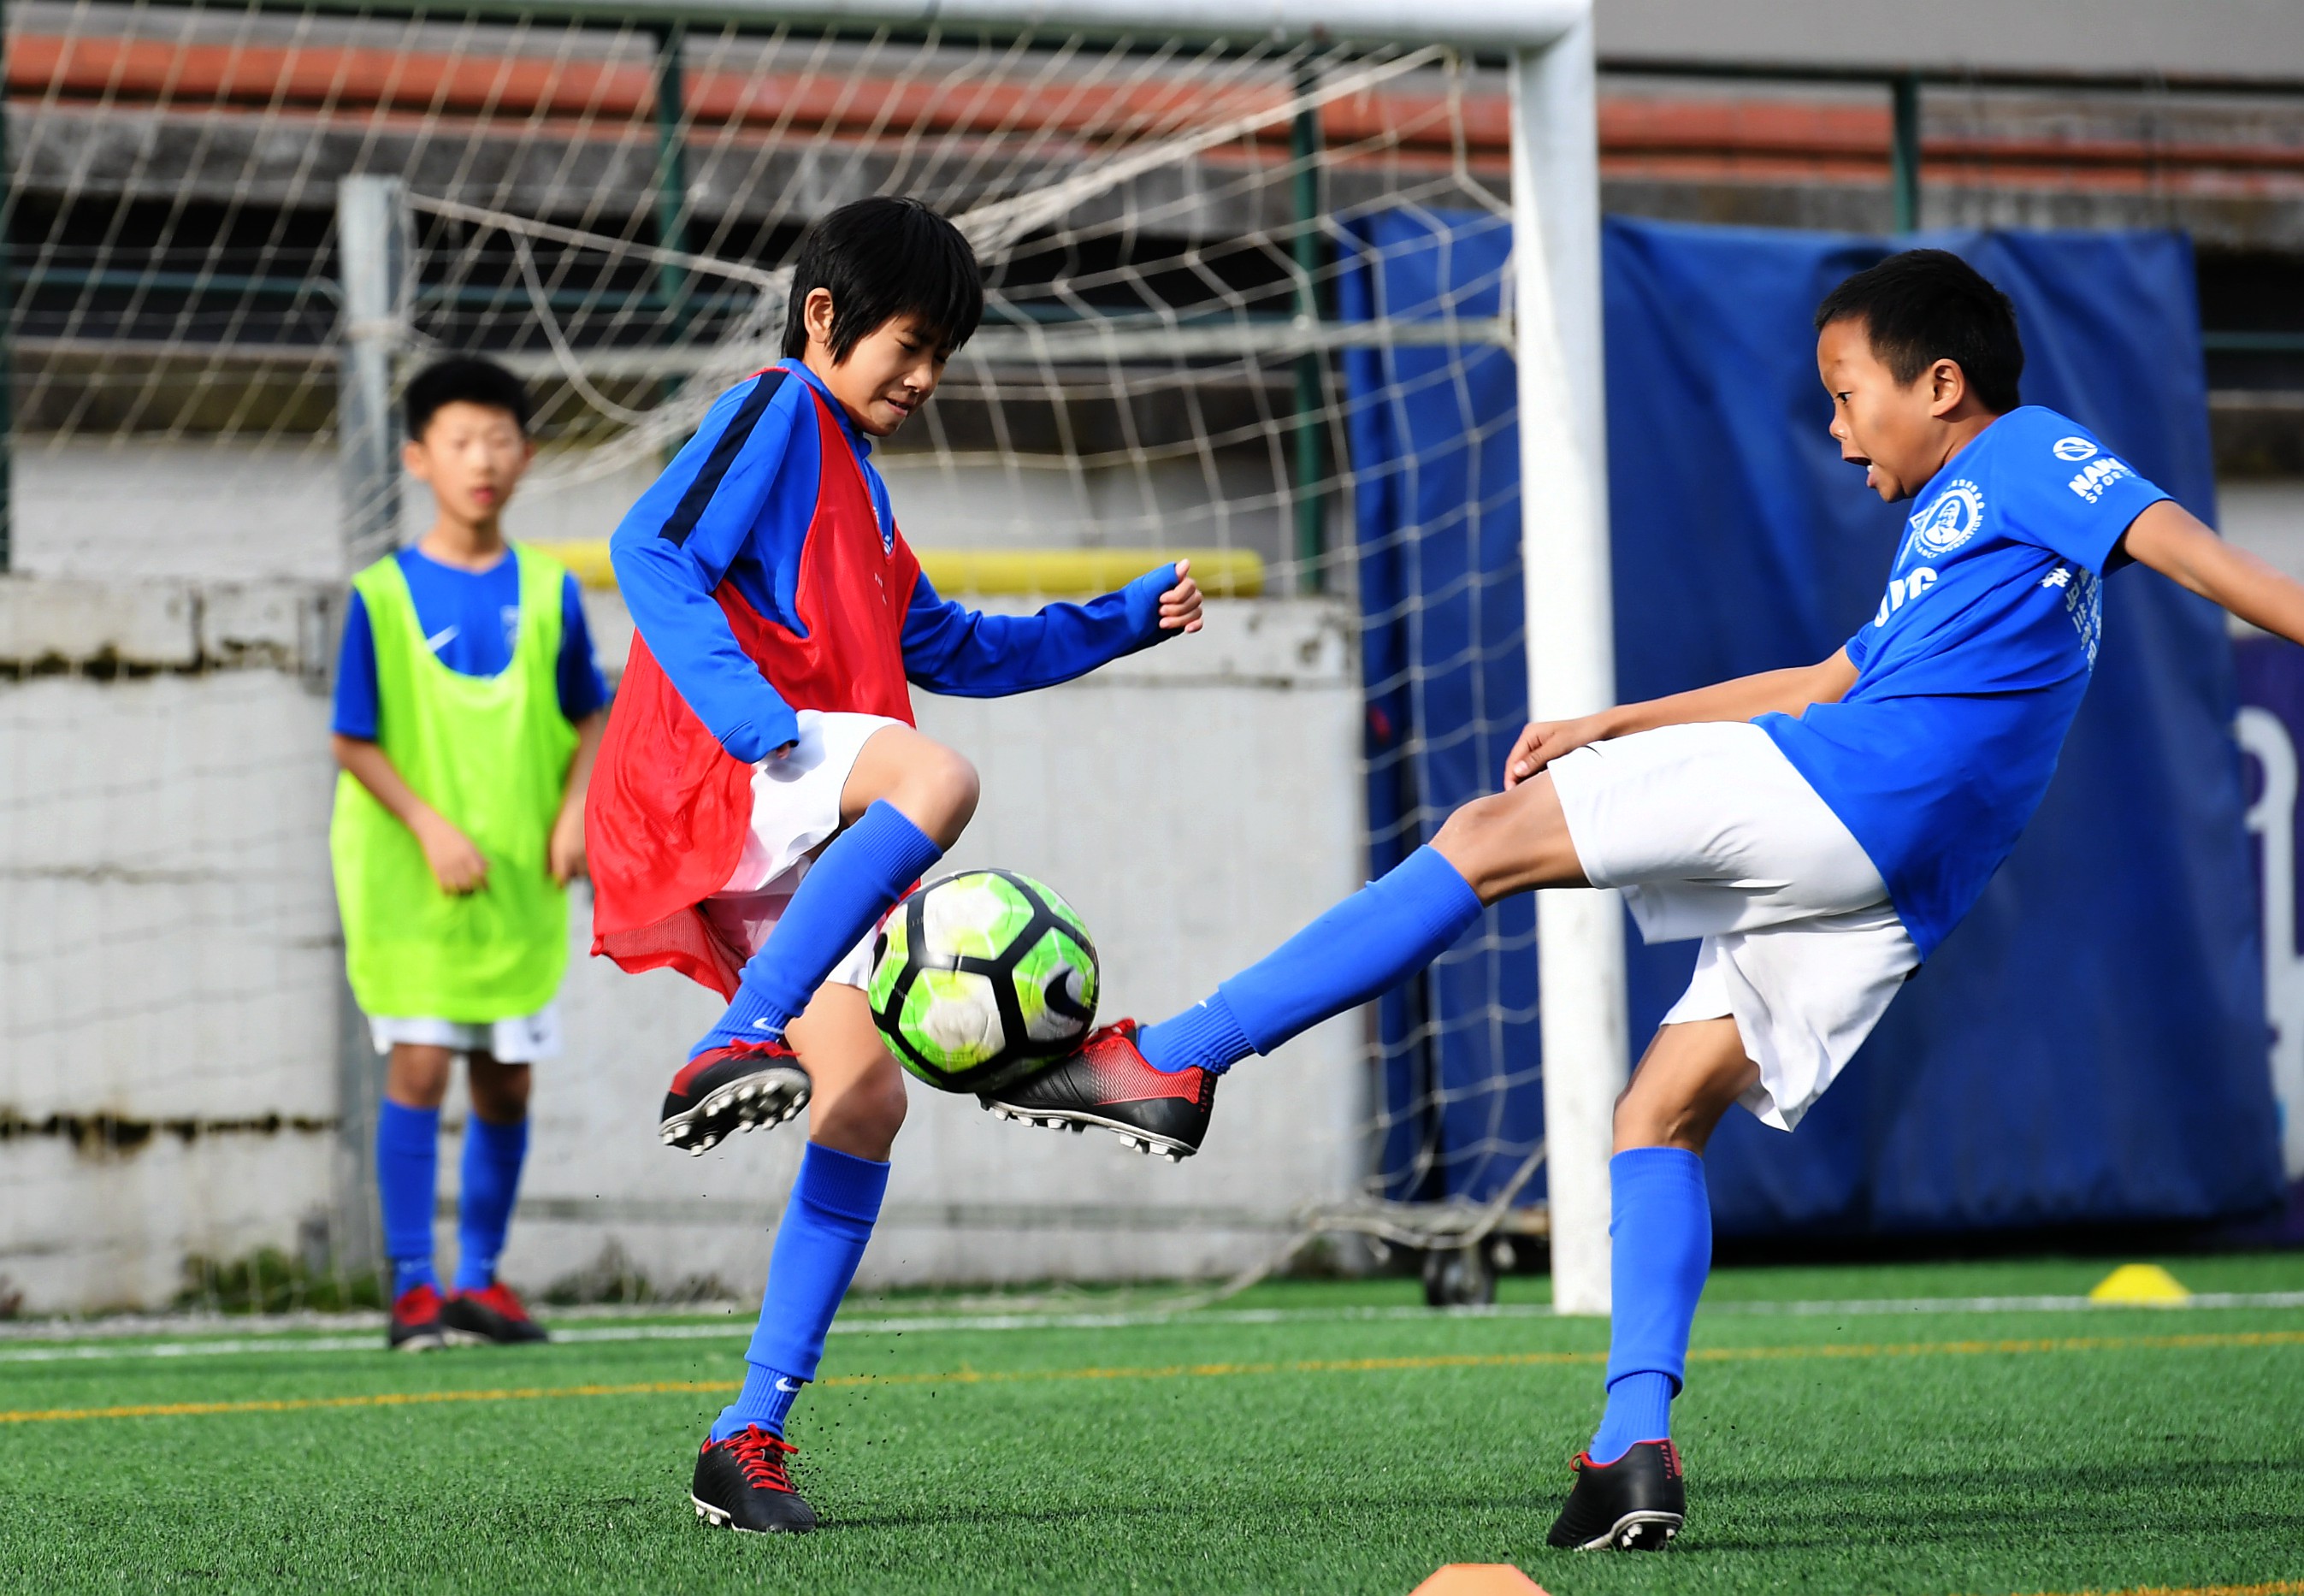 中国足球小将红队图片